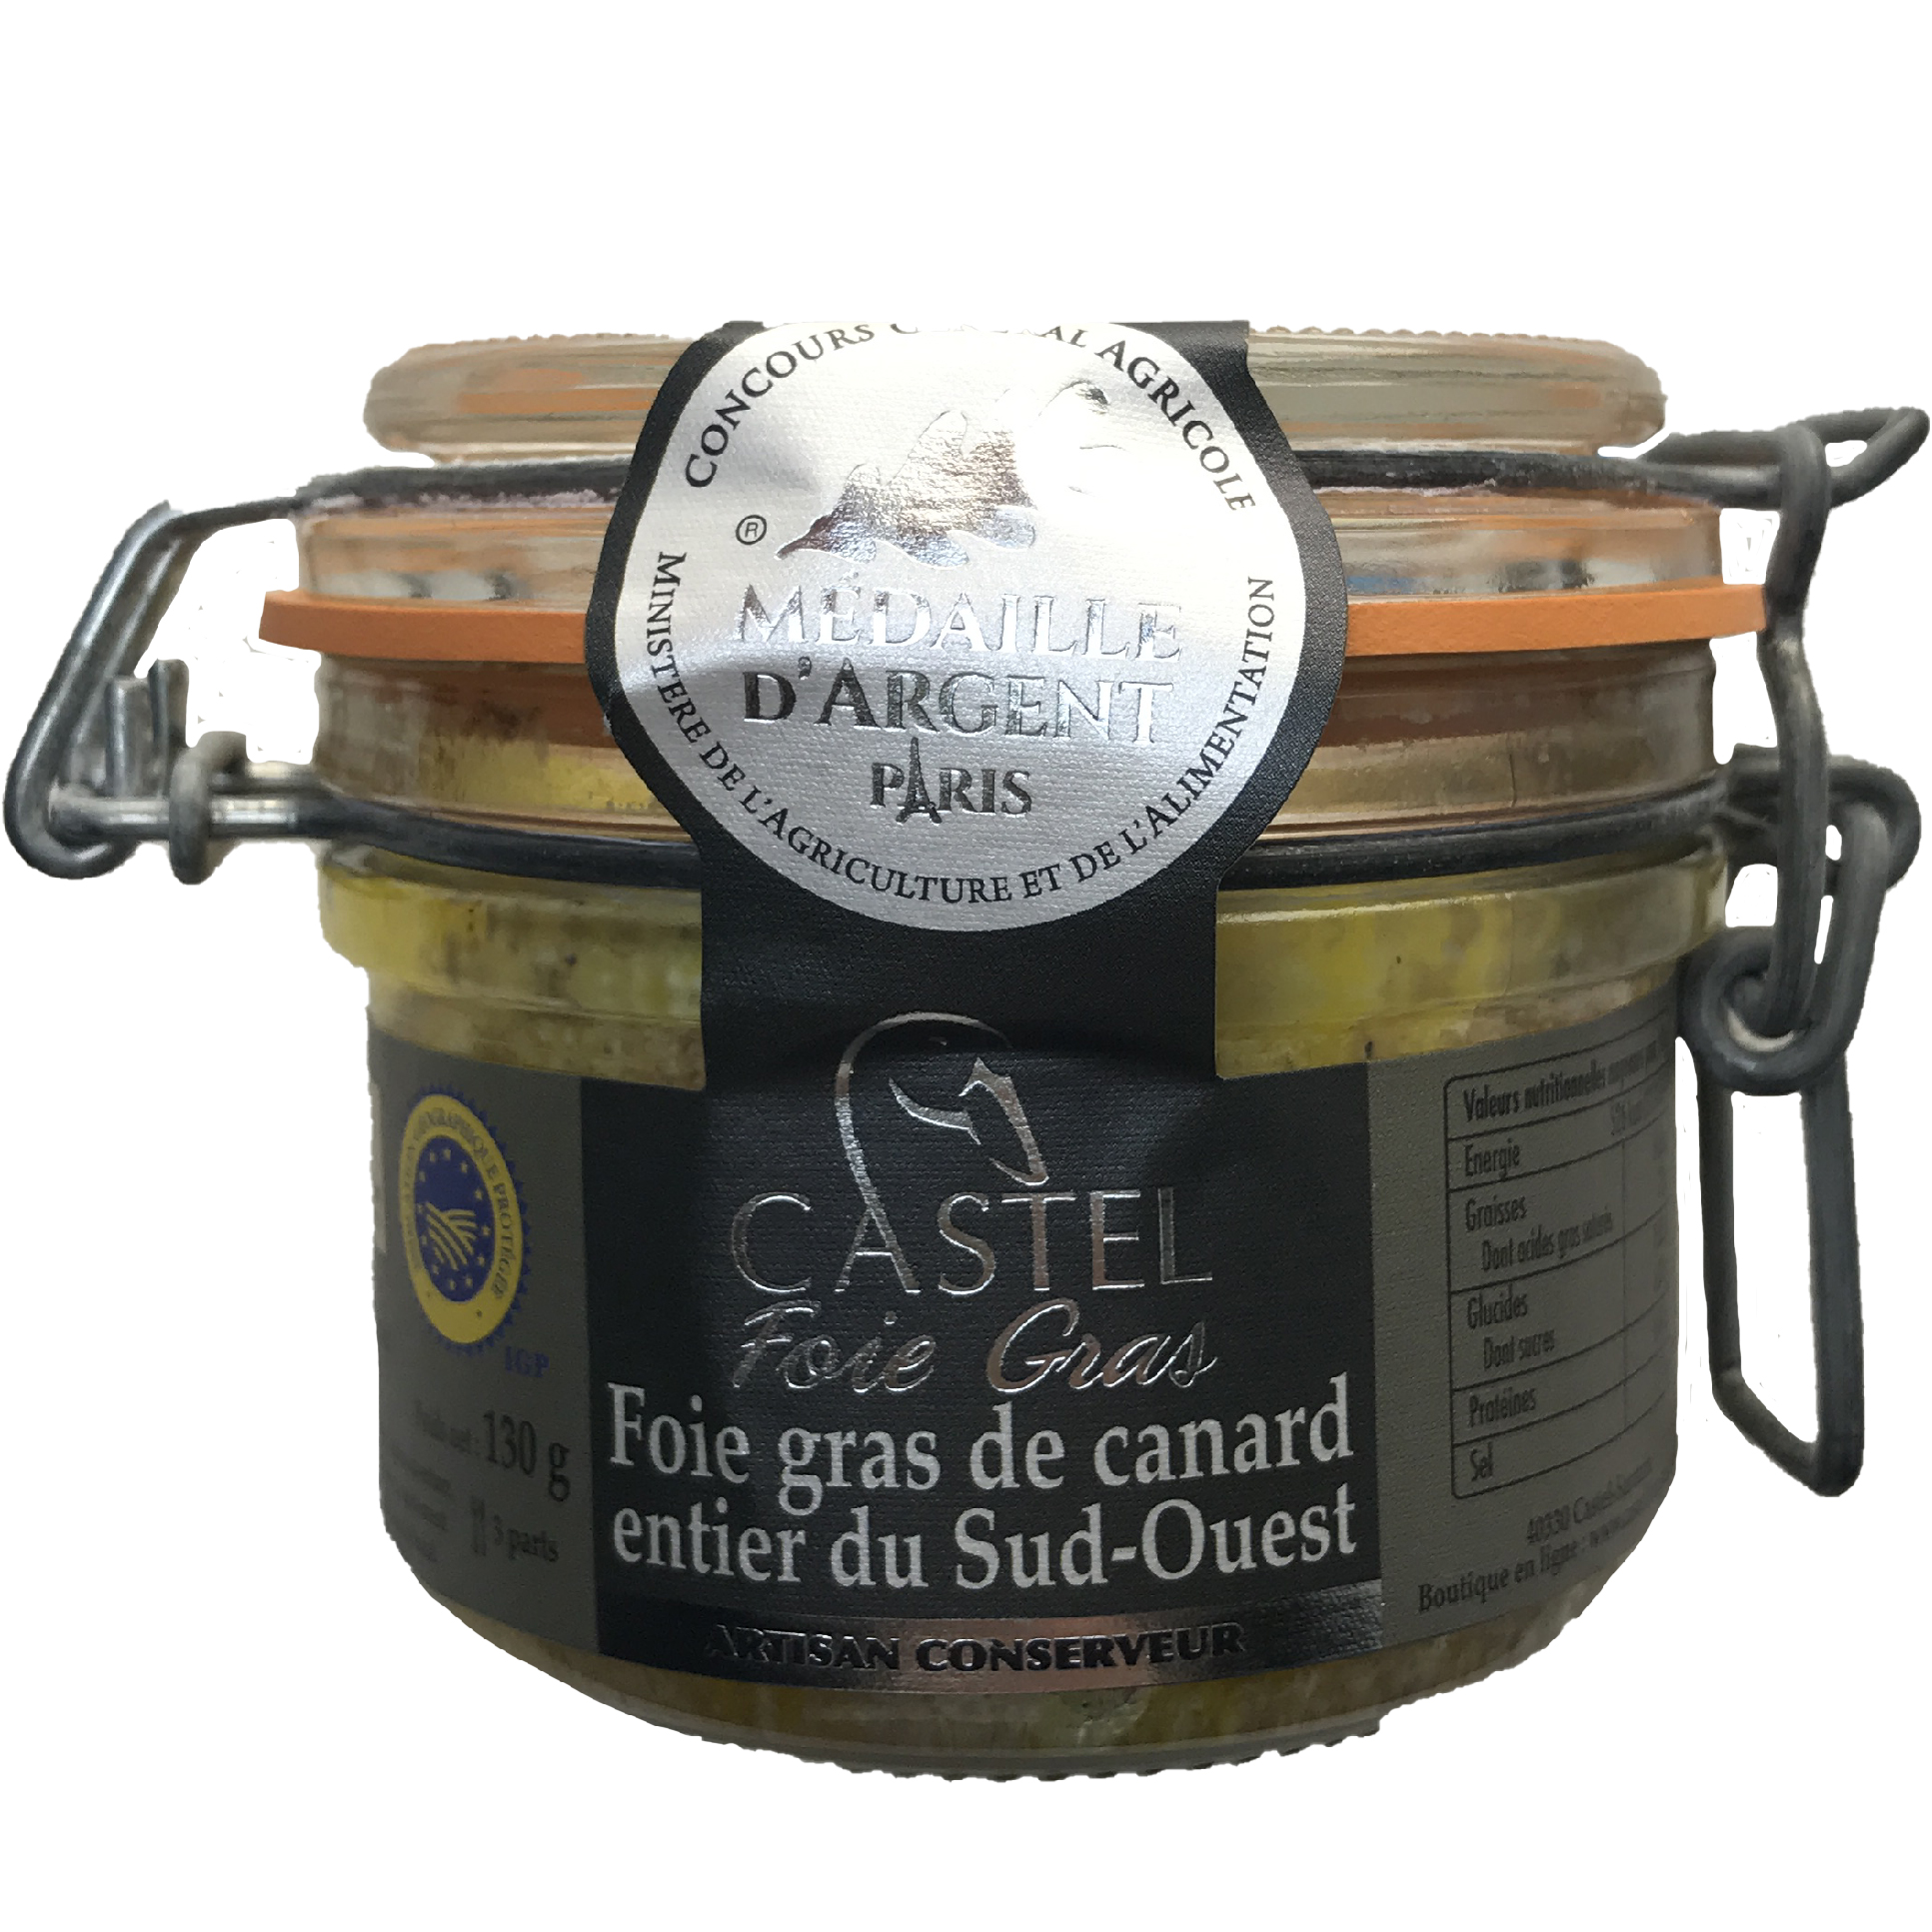 Coffret de foie gras de canard — Cadeau gastronomie du sud-ouest